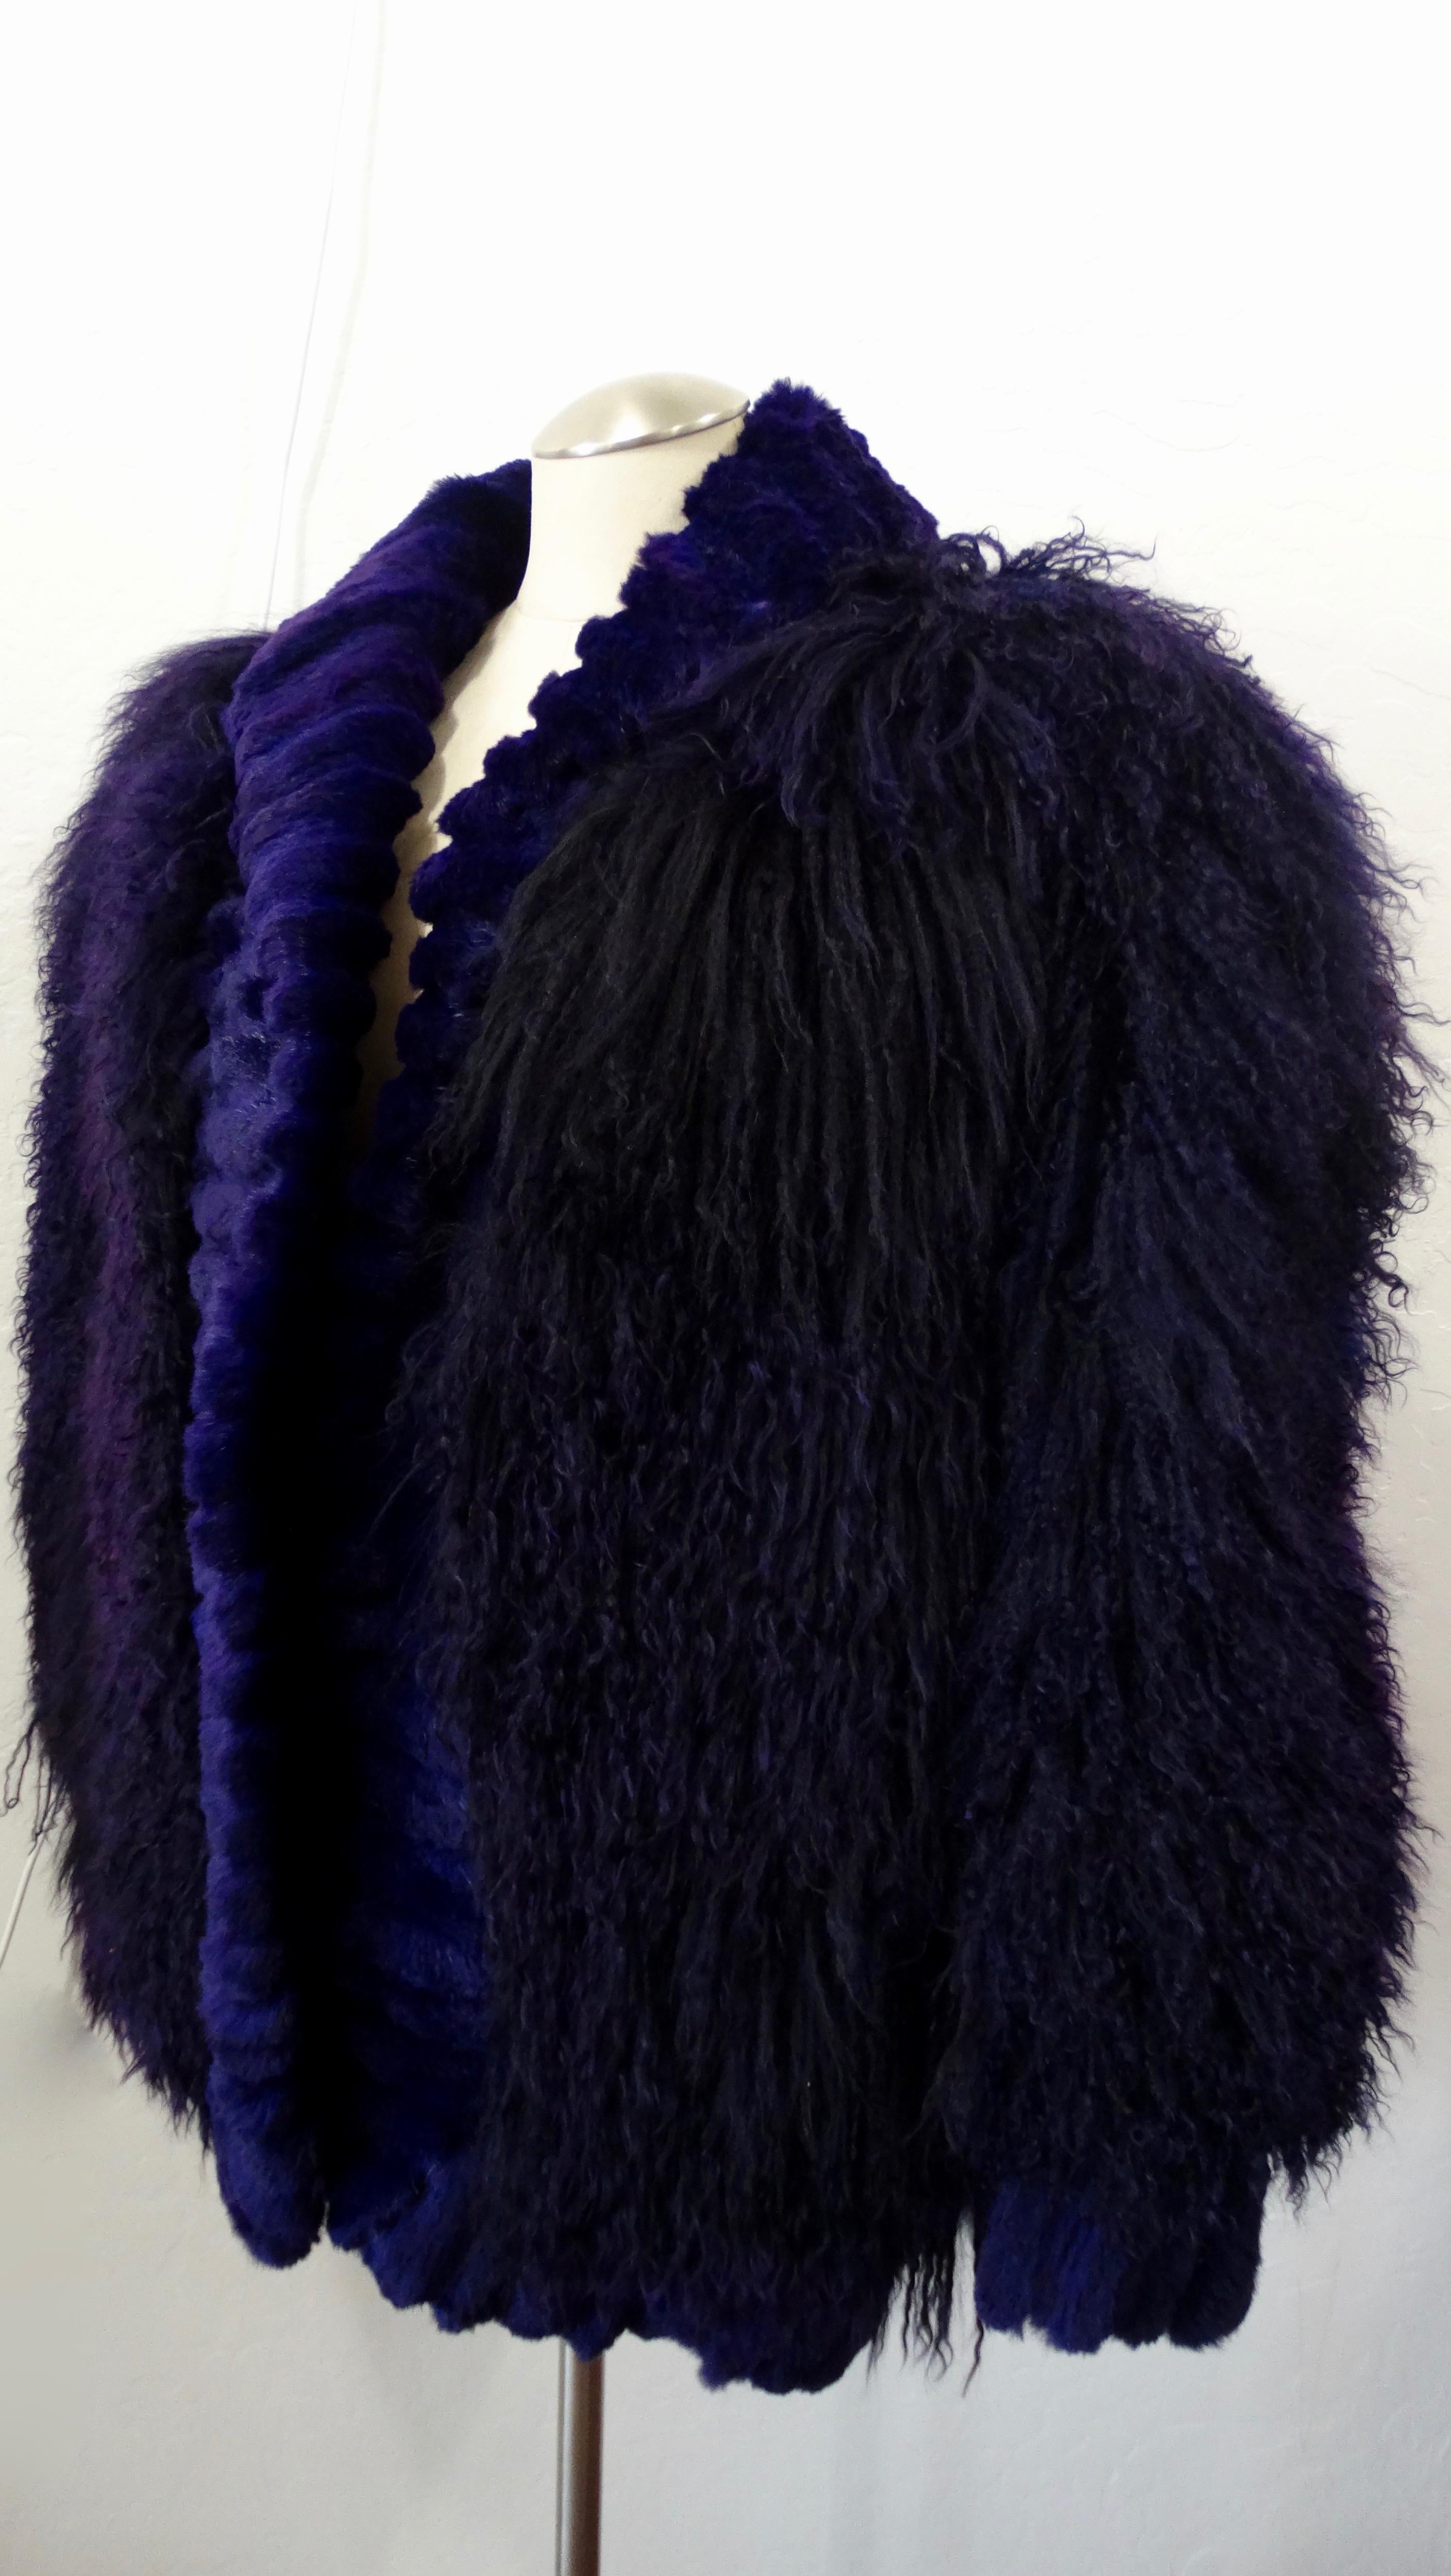 Affrontez le froid avec style ! Datant des années 1980, cette veste surdimensionnée est fabriquée en agneau de Mongolie teint en violet et présente une bordure en fourrure de lapin ton sur ton sur tout le pourtour de l'ourlet et des poignets.